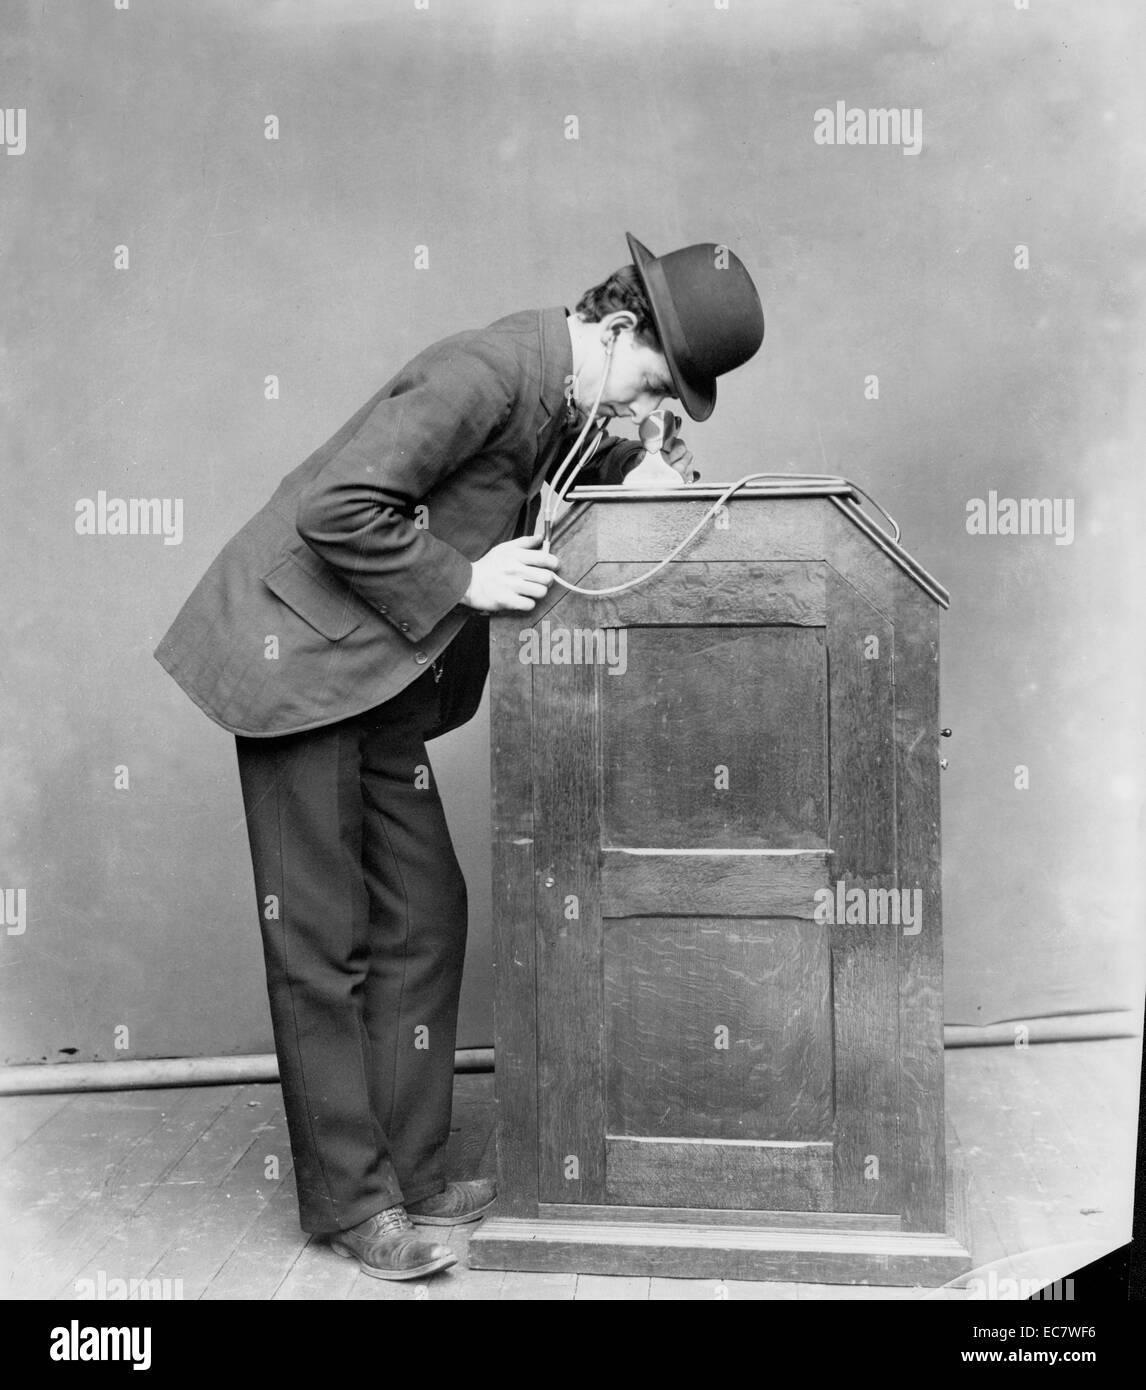 Albert Einsteins Kinetoscope Arcade. Das kinetoscope war eine frühe motion picture Ausstellung Gerät, erlaubt Filme von einer Person zu einem Zeitpunkt durch ein Guckloch Viewer Fenster oben angezeigt werden. Dies war das grundlegende Modell für den späteren Film Projektionen. Stockfoto